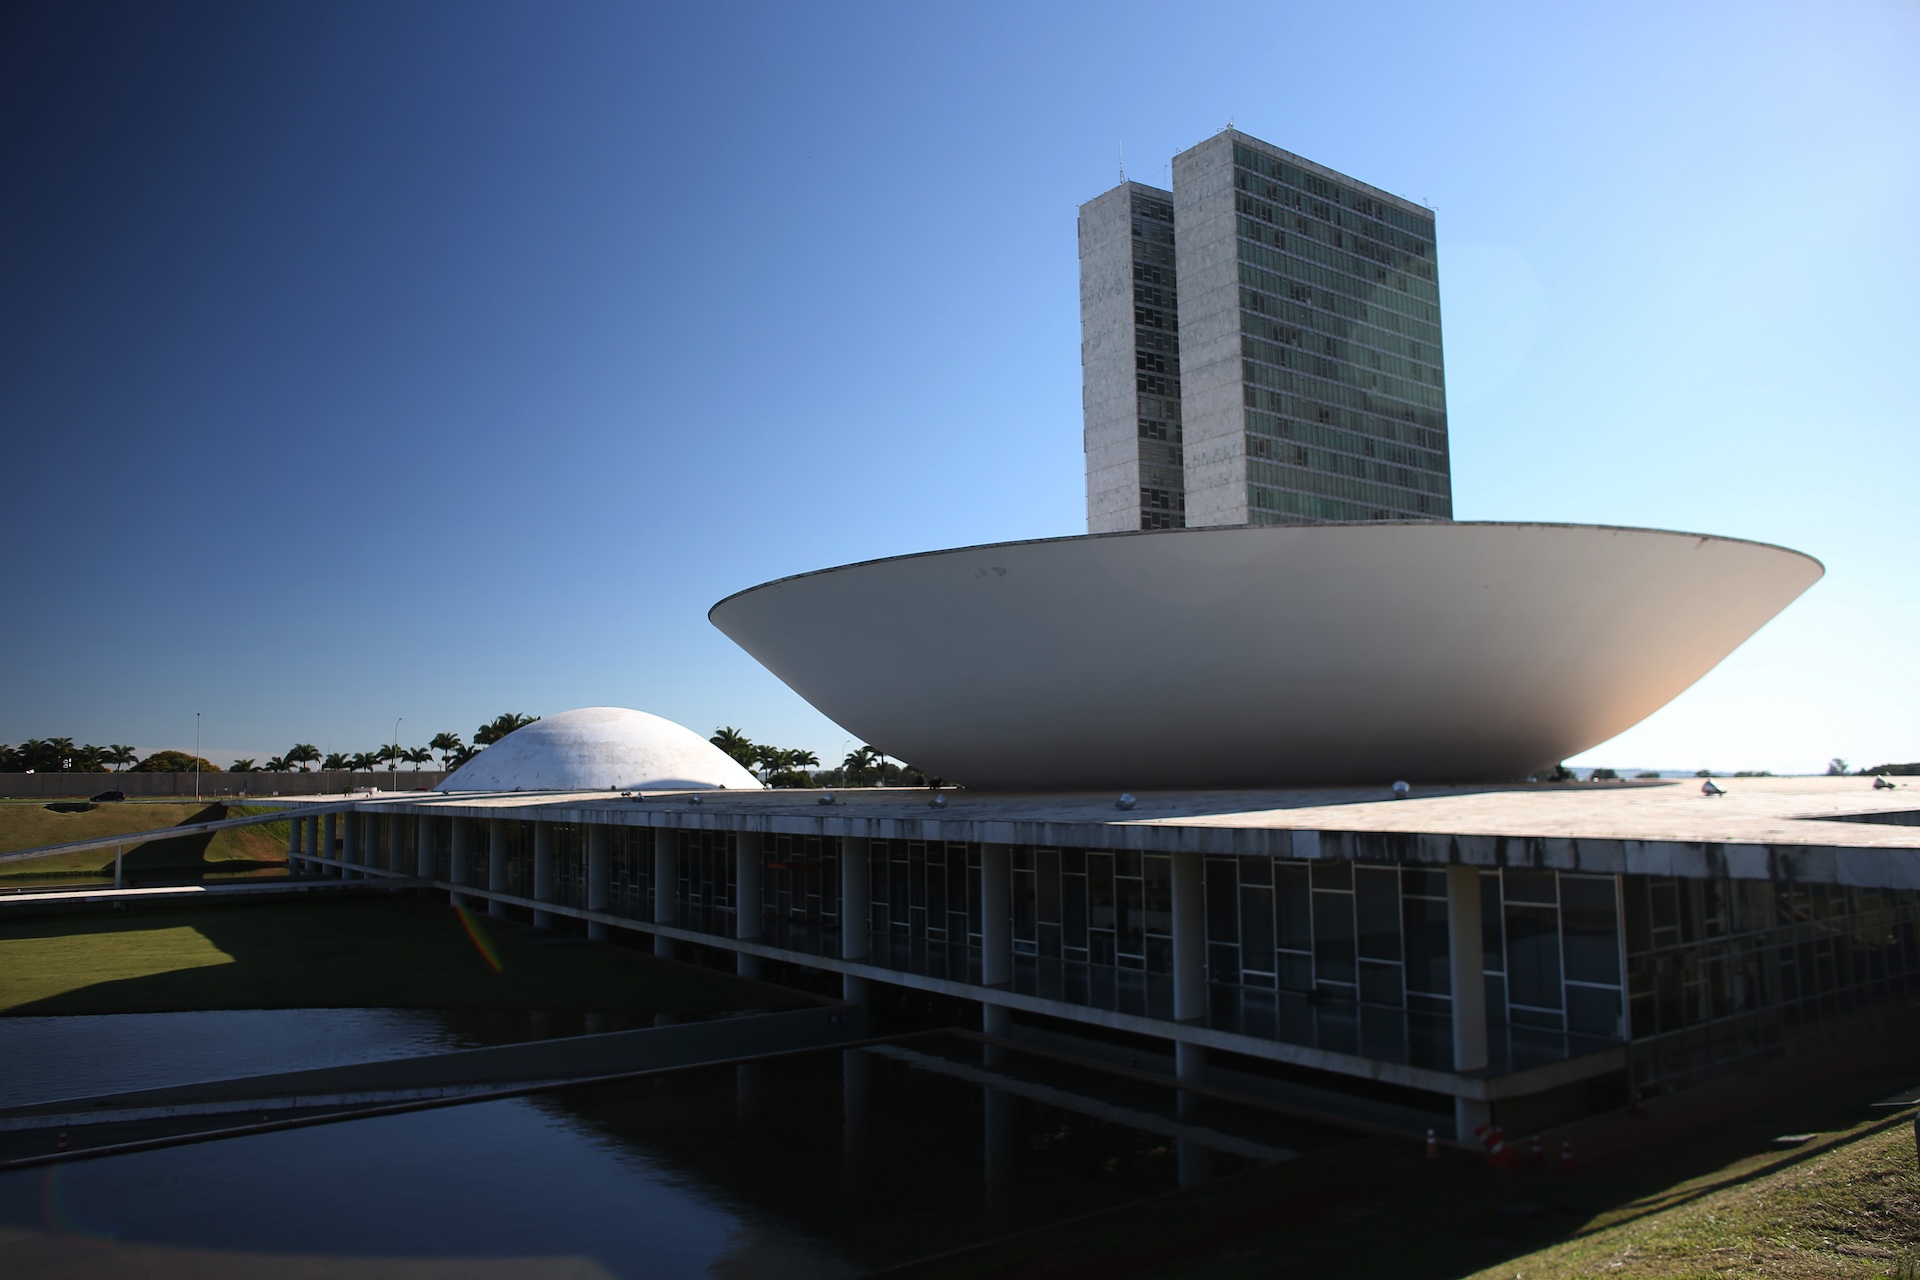 Congreso Nacional, una de las tarjetas postales de Brasilia. Foto: Ministerio del Turismo/Divulgación